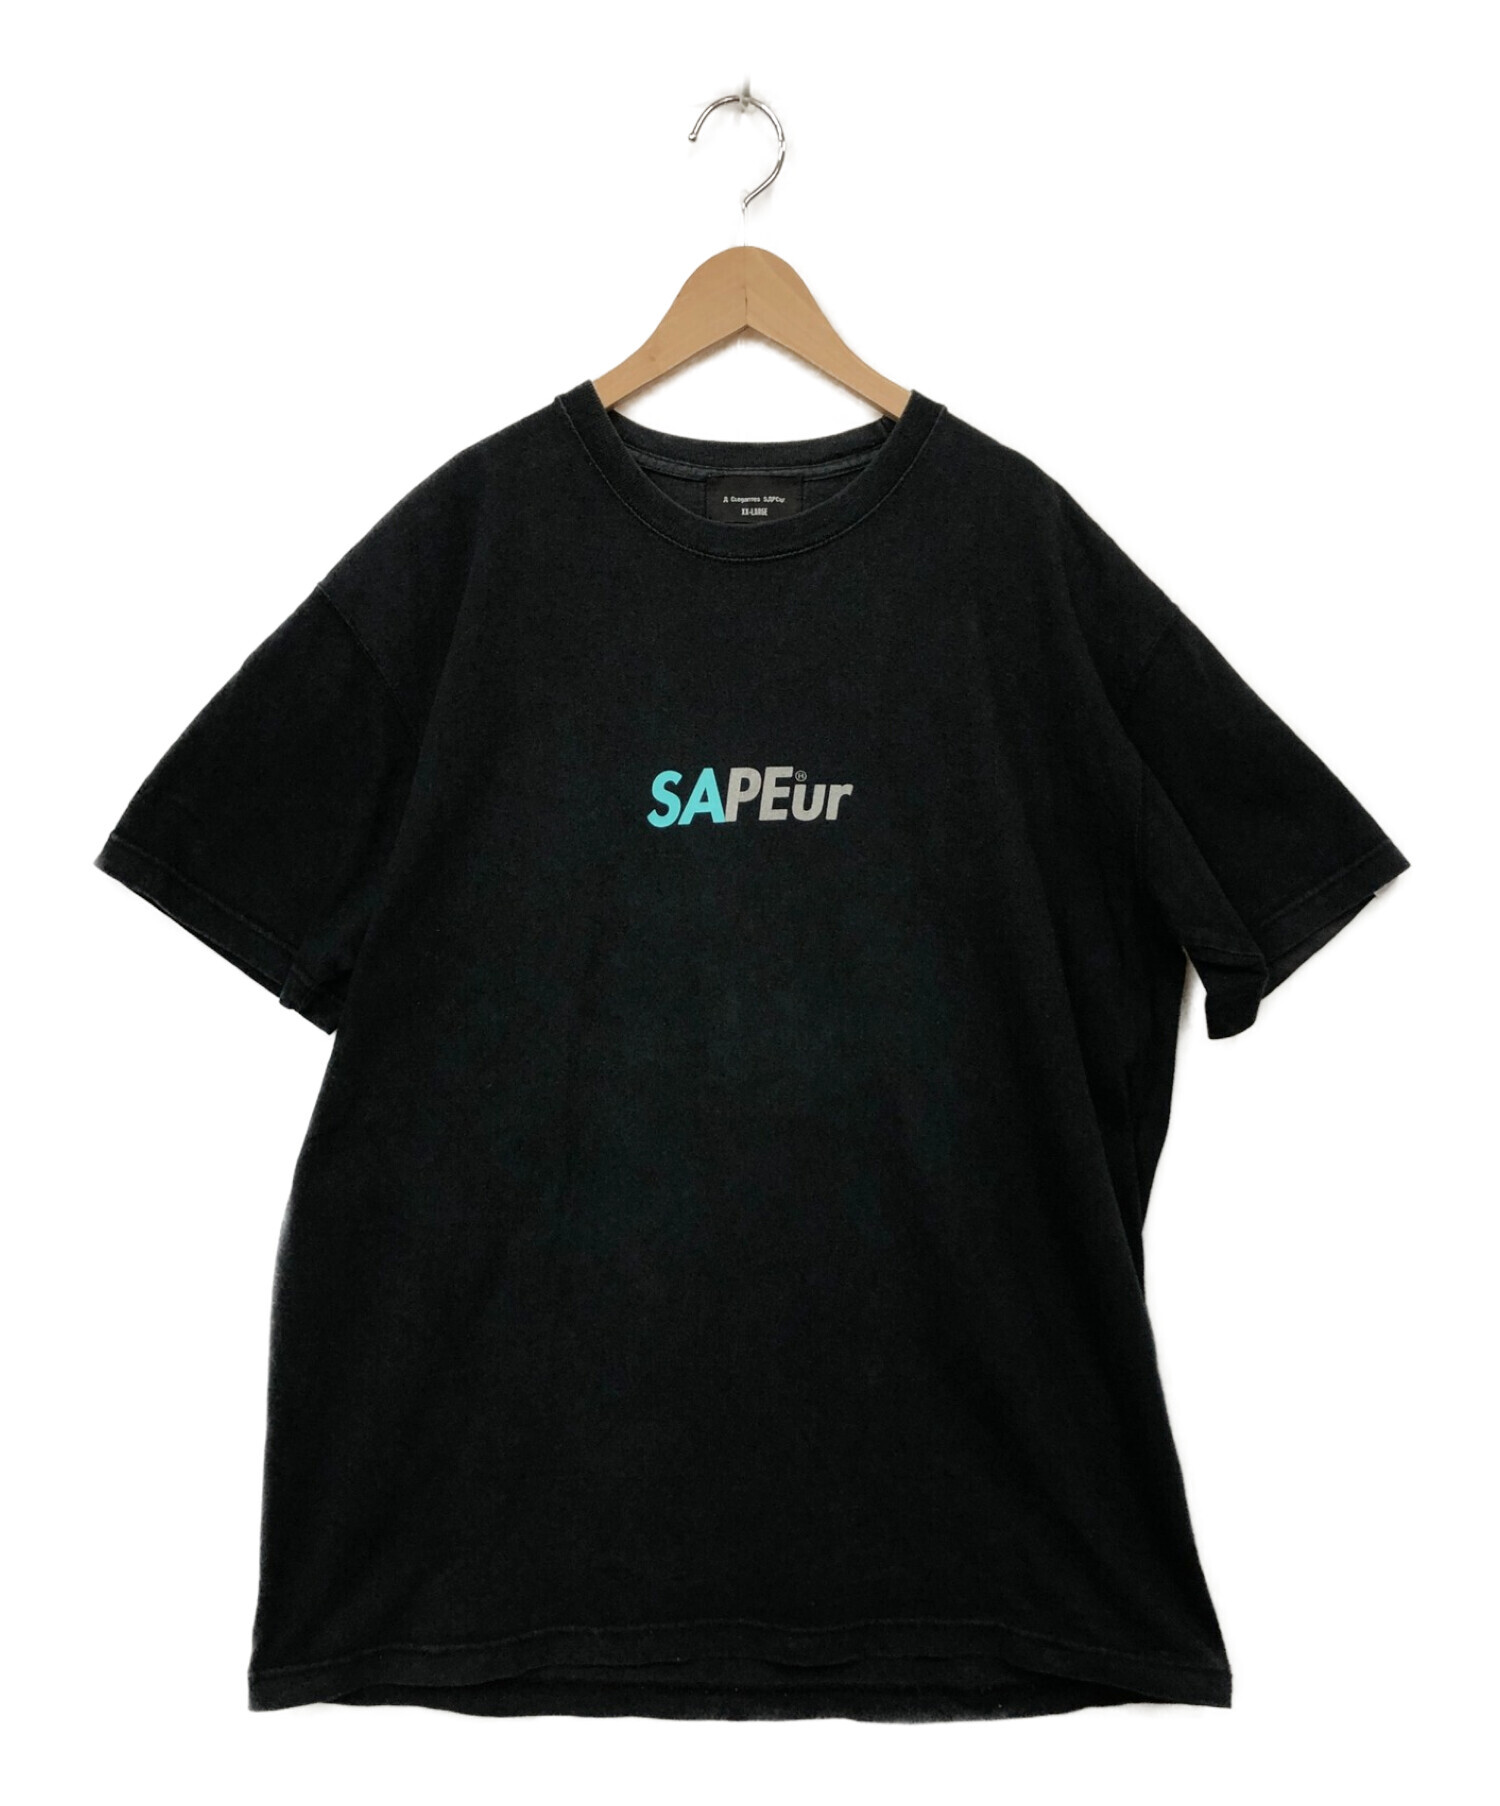 SAPEur (サプール) Tシャツ ブラック サイズ:XXL